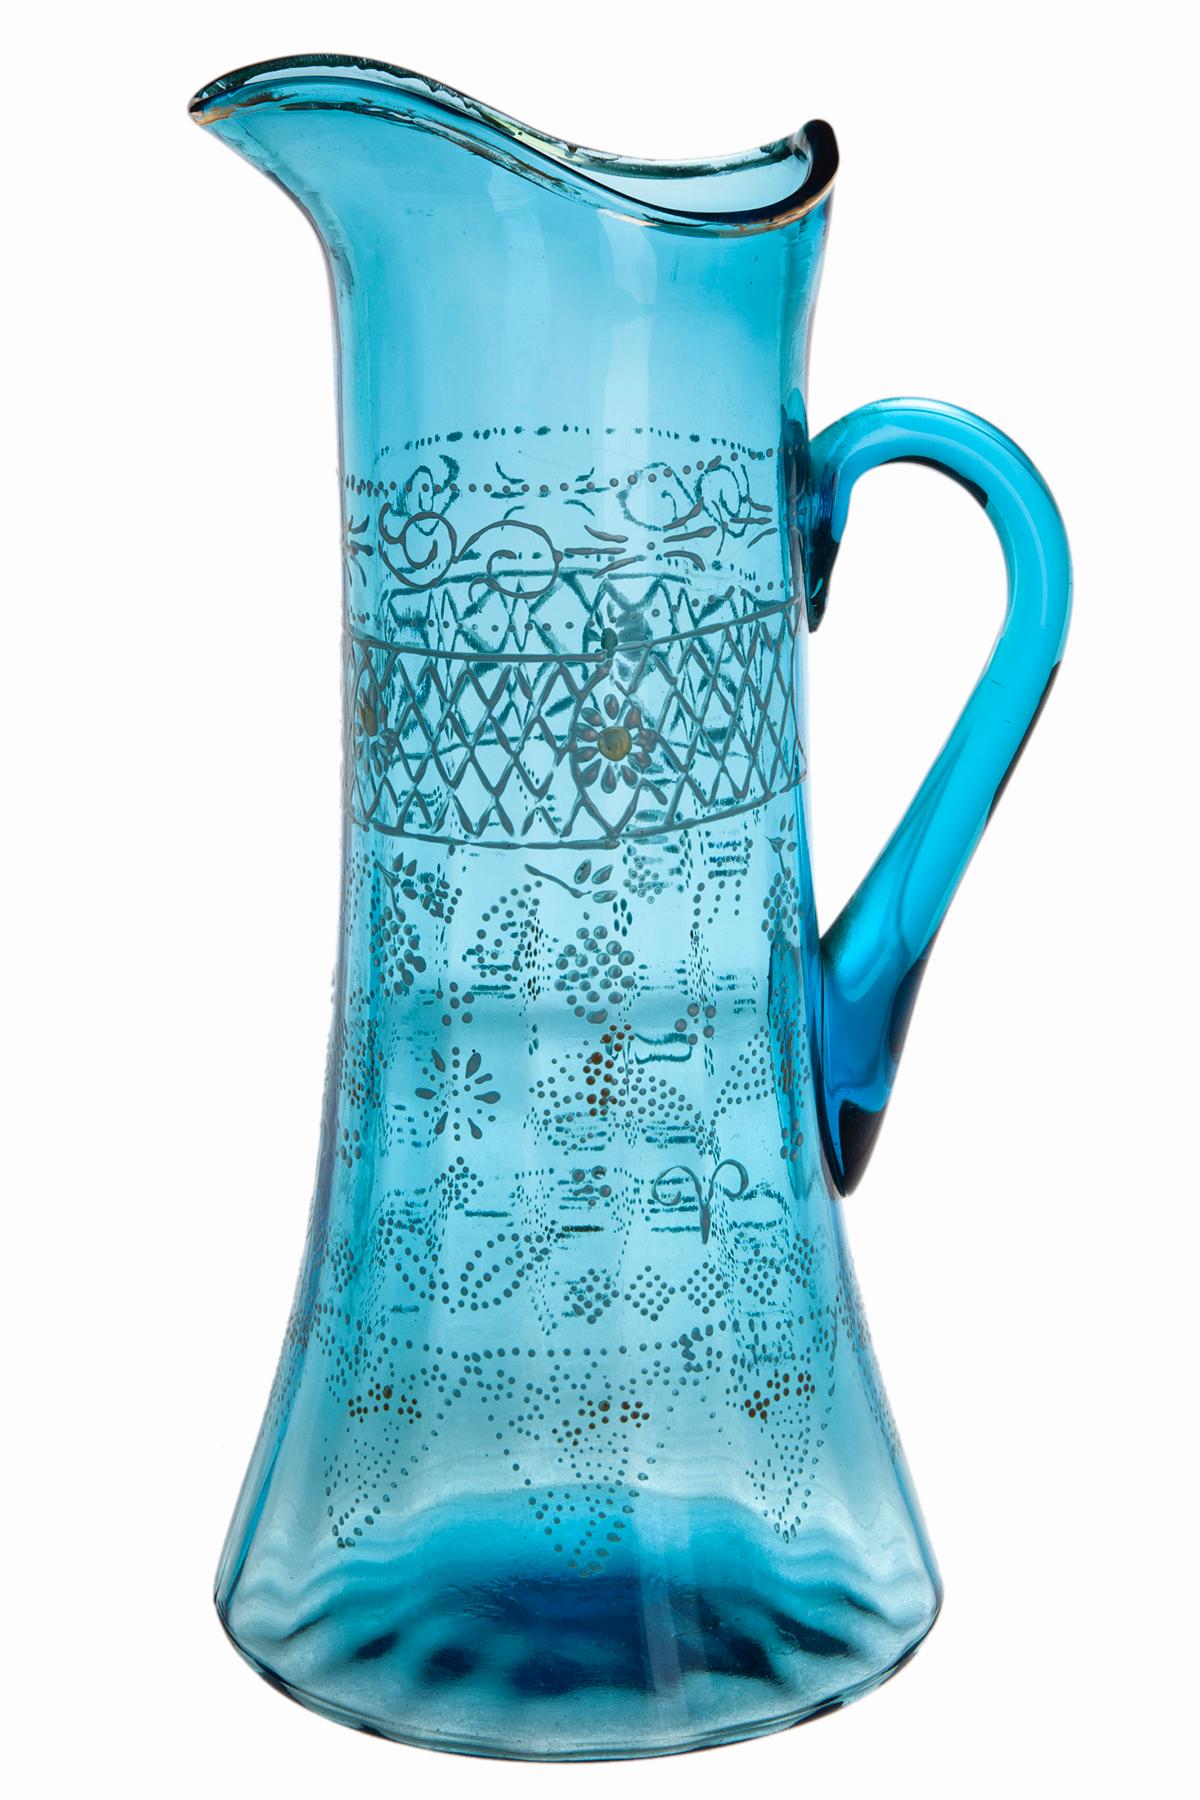 Pichet en verre soufflé à la main bleu aqua translucide de la fin du 19e siècle et du début du 20e siècle, avec anse appliquée. Bordure et accents dorés peints à la main en émail avec des motifs complexes.